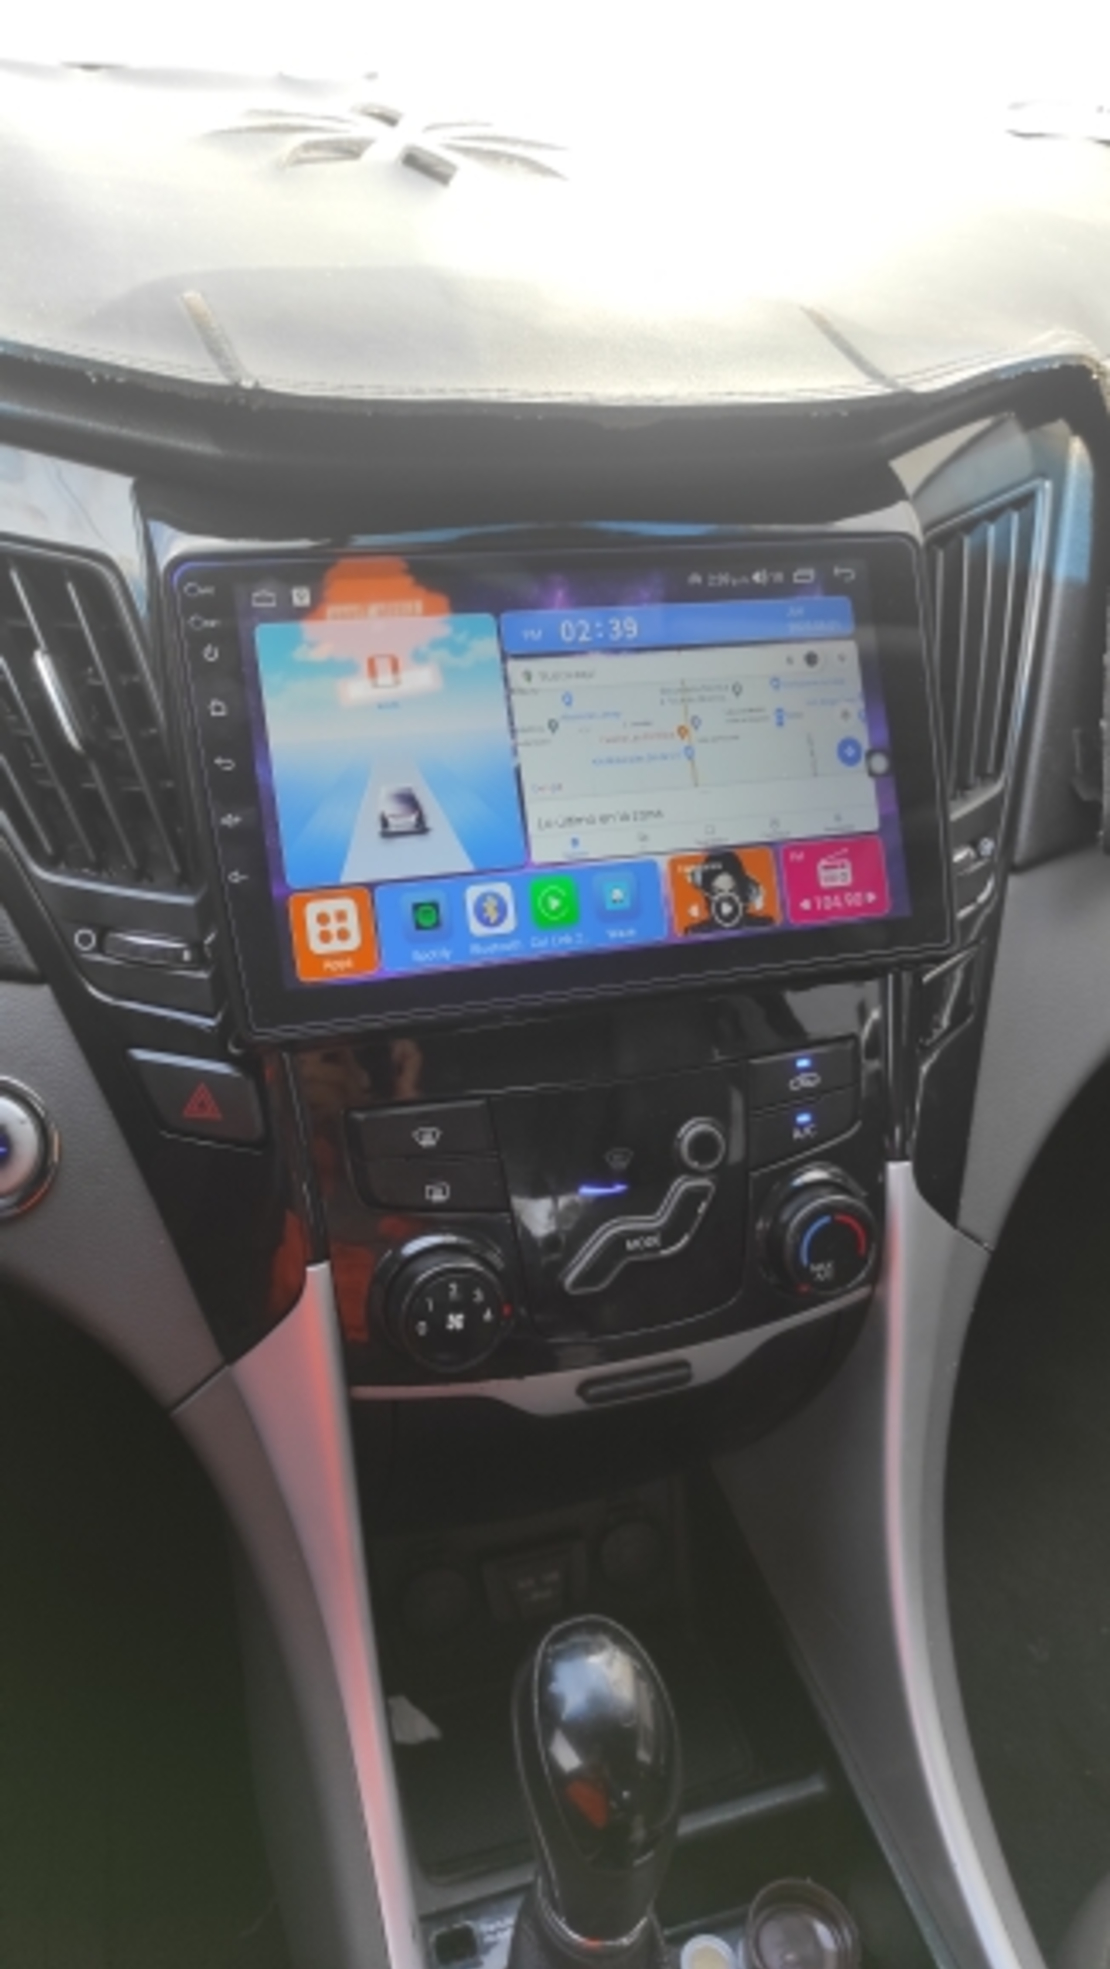 Hyundai Sonata 2009- 2015 Android Multimedia/Navigation